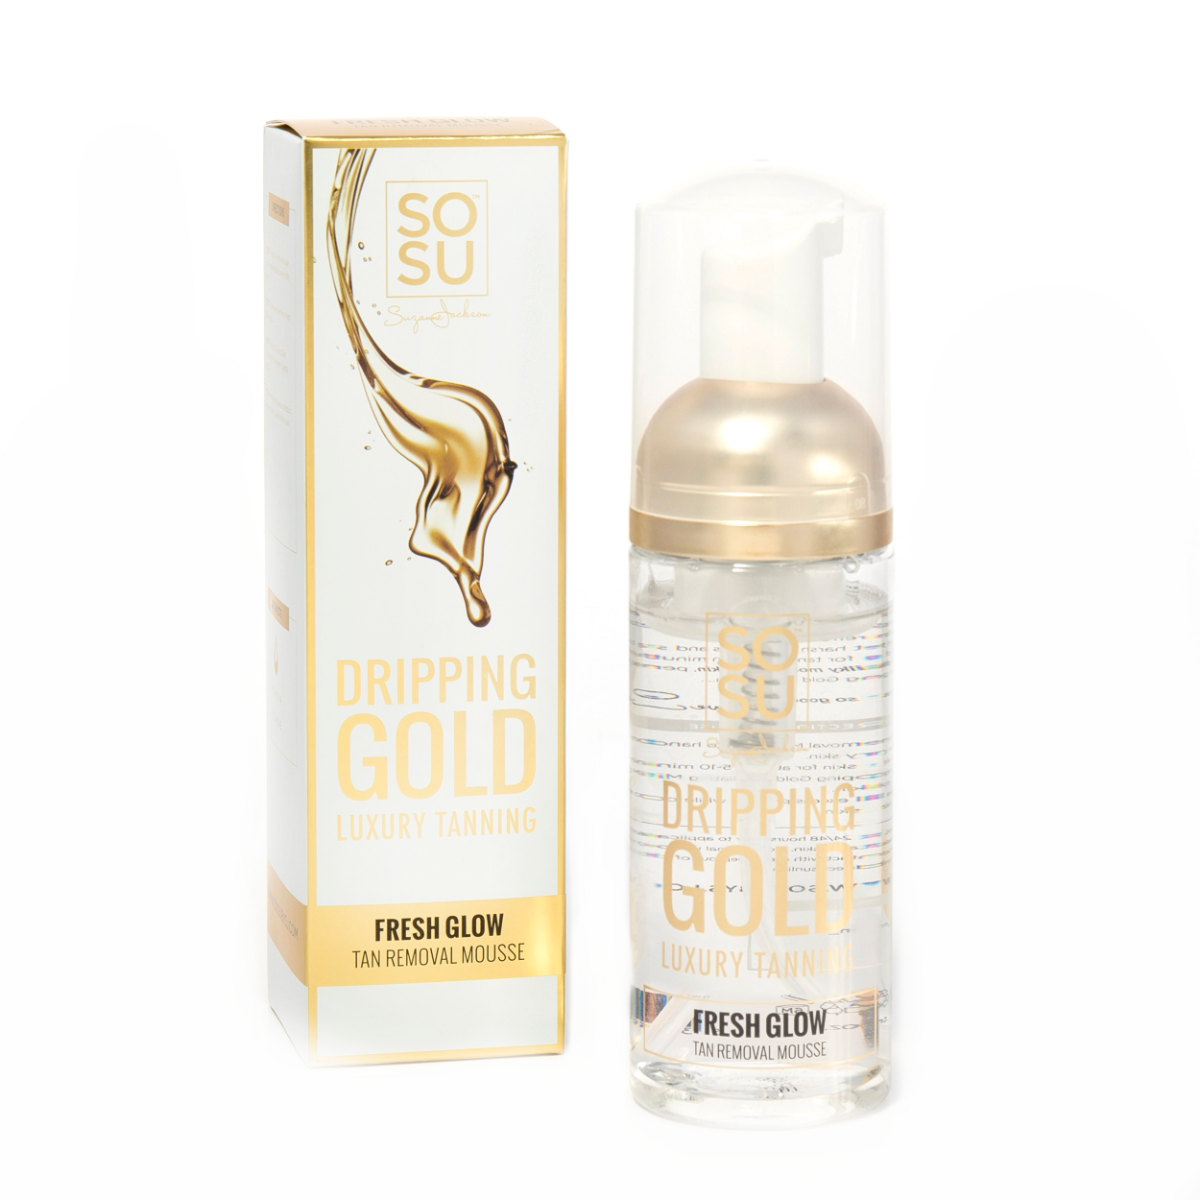 SOSU Dripping Gold Fresh Glow Pěna na odstranění opálení 150 ml SOSU